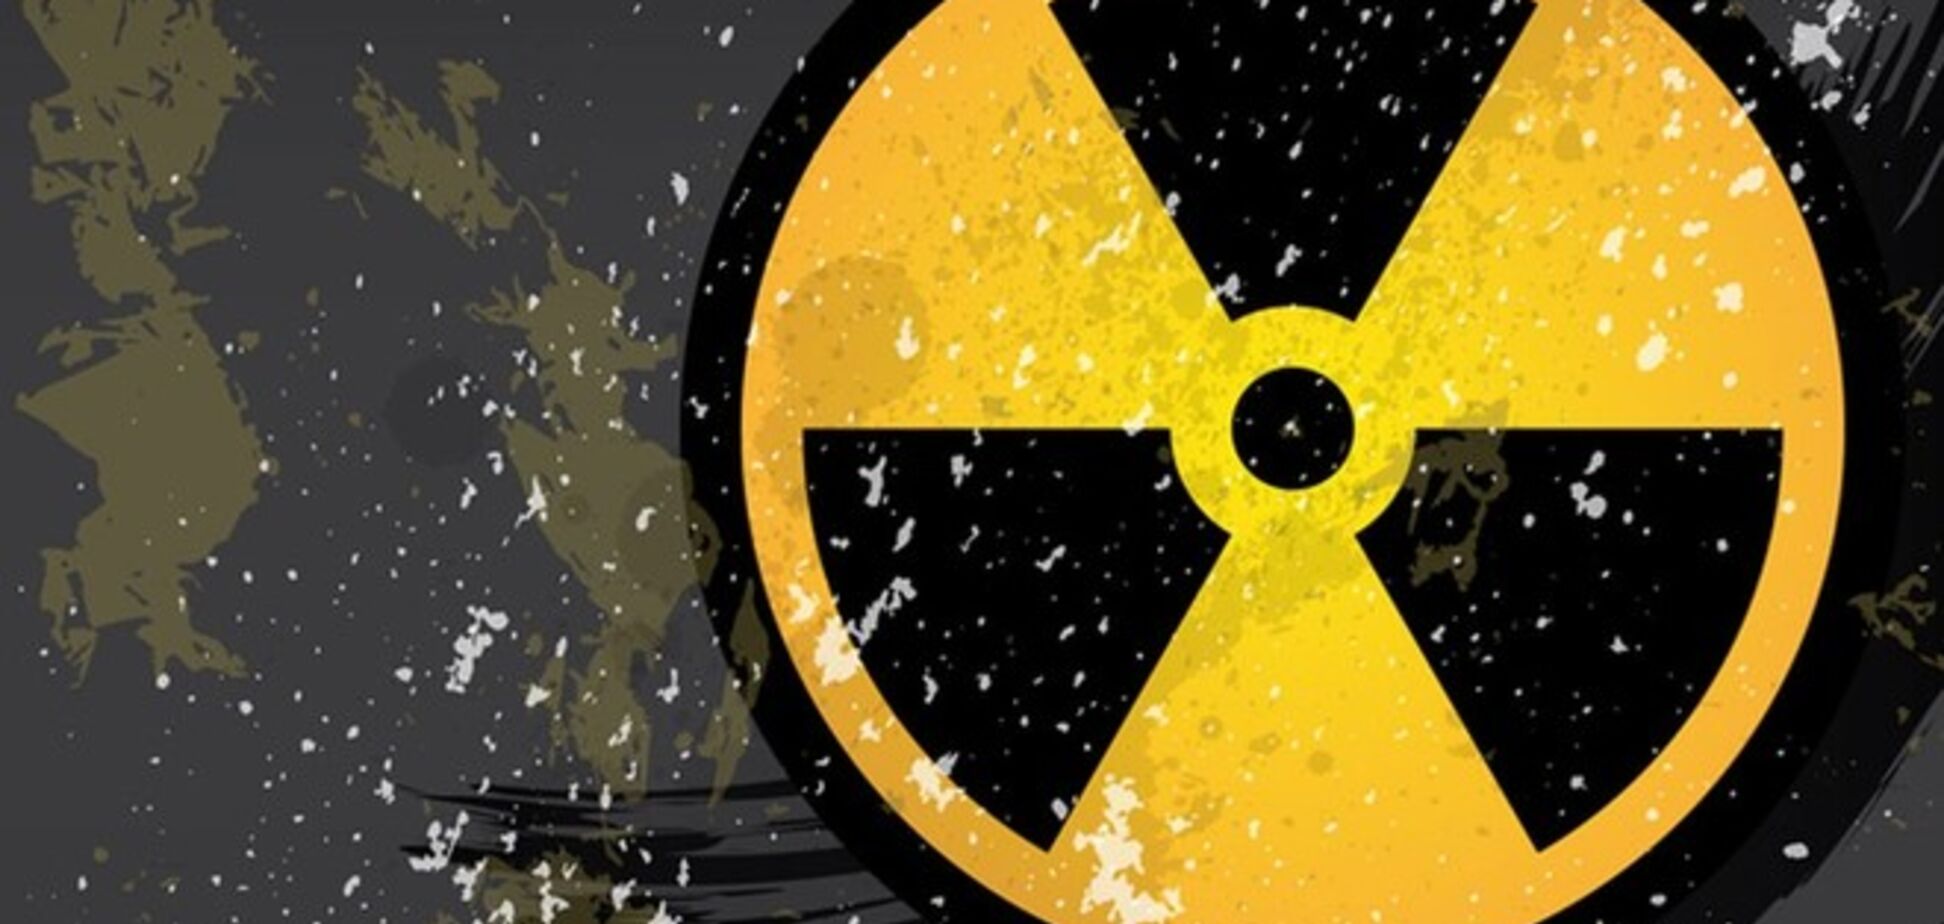 Россия прекратила сотрудничество с США по охране ядерных объектов